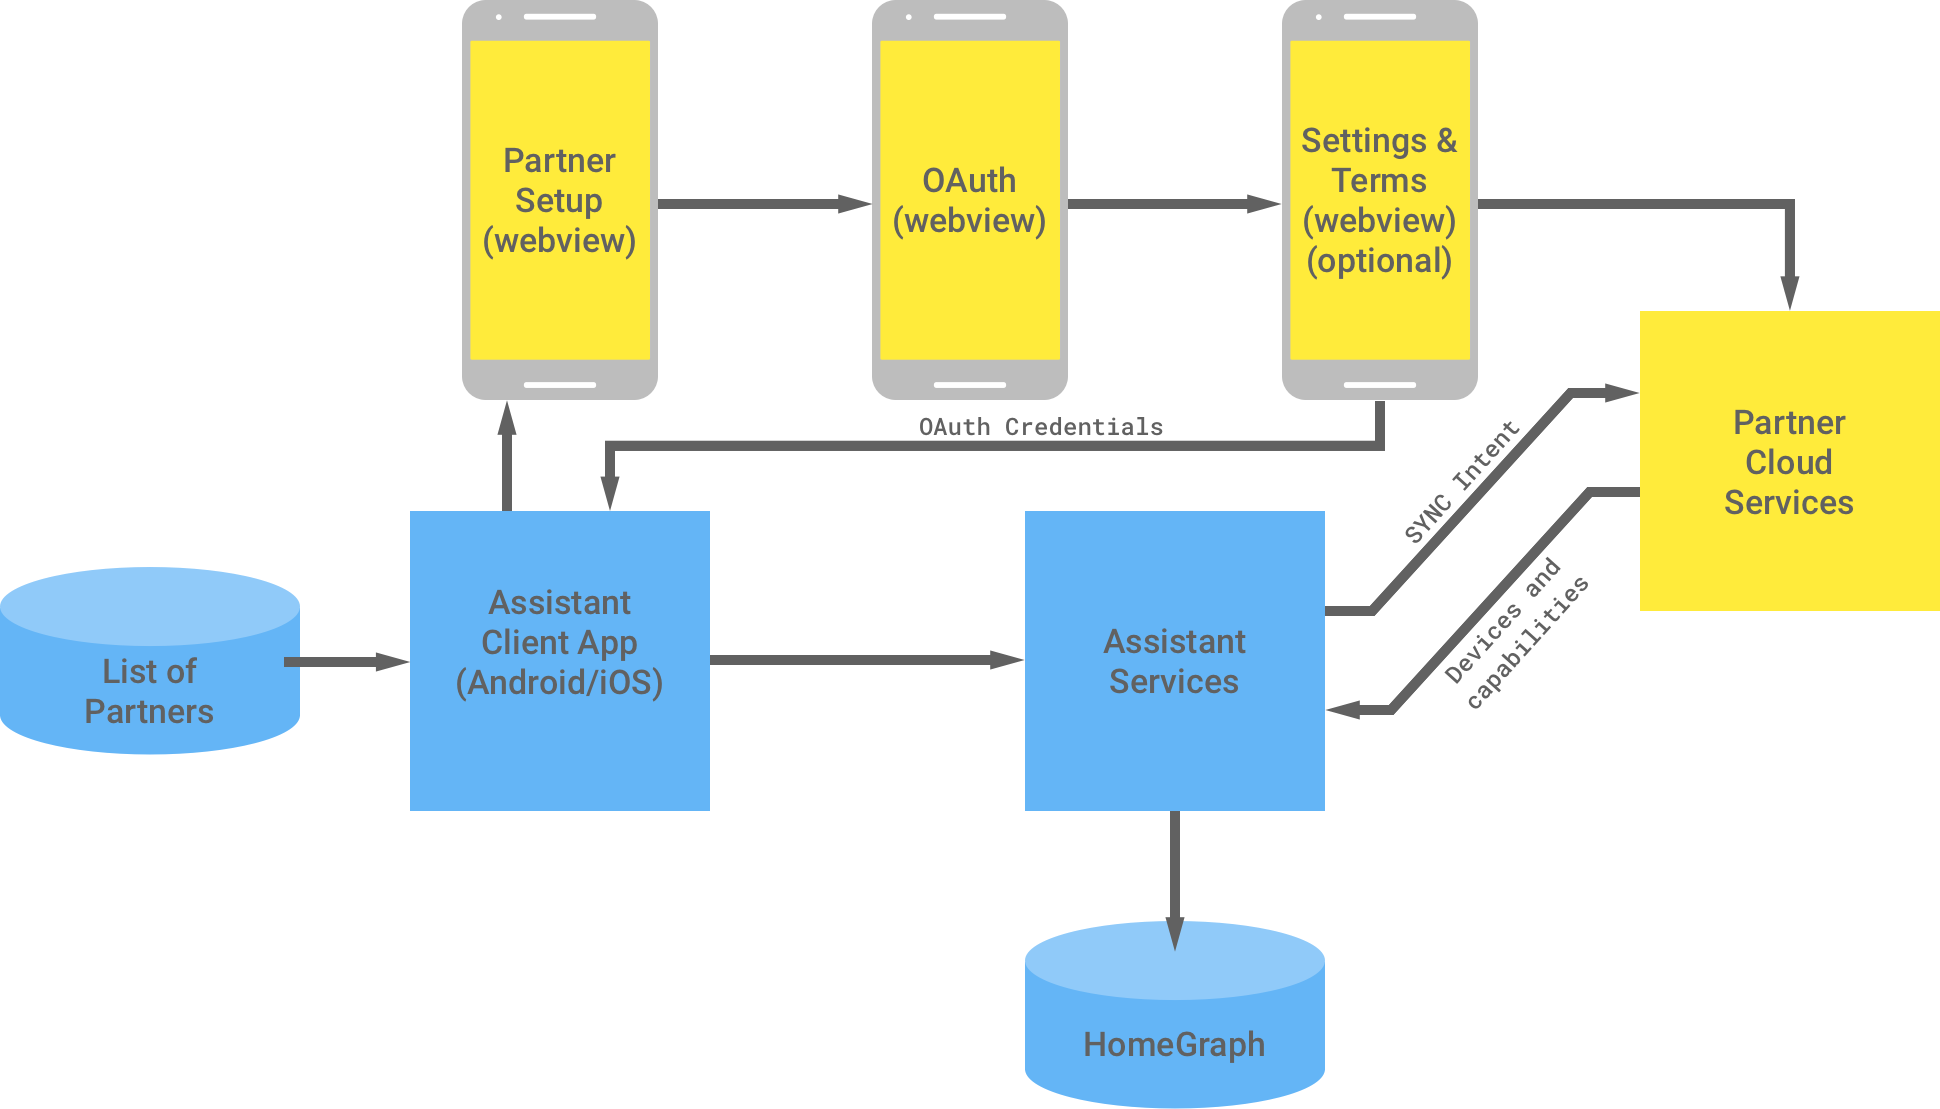 يوضّح هذا الشكل التفاعل بين البنية الأساسية لشركة Google والبنية الأساسية الخاصة بالشريك. من بنية Google الأساسية، تتوفر
 قائمة بالشركاء لتطبيق عميل &quot;مساعد Google&quot;، والتي تتدفق بعد ذلك إلى البنية الأساسية للشريك لإكمال مصادقة OAuth. أمّا مصادقة OAuth
    من جهة الشريك، فهي WebView لإعداد الشريك وعرض OAuth على الويب
    والإعدادات الاختيارية وبنود الخدمة وخدمات السحابة الإلكترونية للشركاء. بعد ذلك، تُرجع البنية الأساسية للشريك بيانات اعتماد OAuth إلى تطبيق &quot;مساعد Google&quot;. ترسل الخدمات السحابية الخاصة بالشركاء الأجهزة والإمكانات المتاحة إلى خدمات &quot;مساعد Google&quot;، وتحفظ هذه المعلومات بعد ذلك المعلومات في قاعدة البيانات Home Graph.